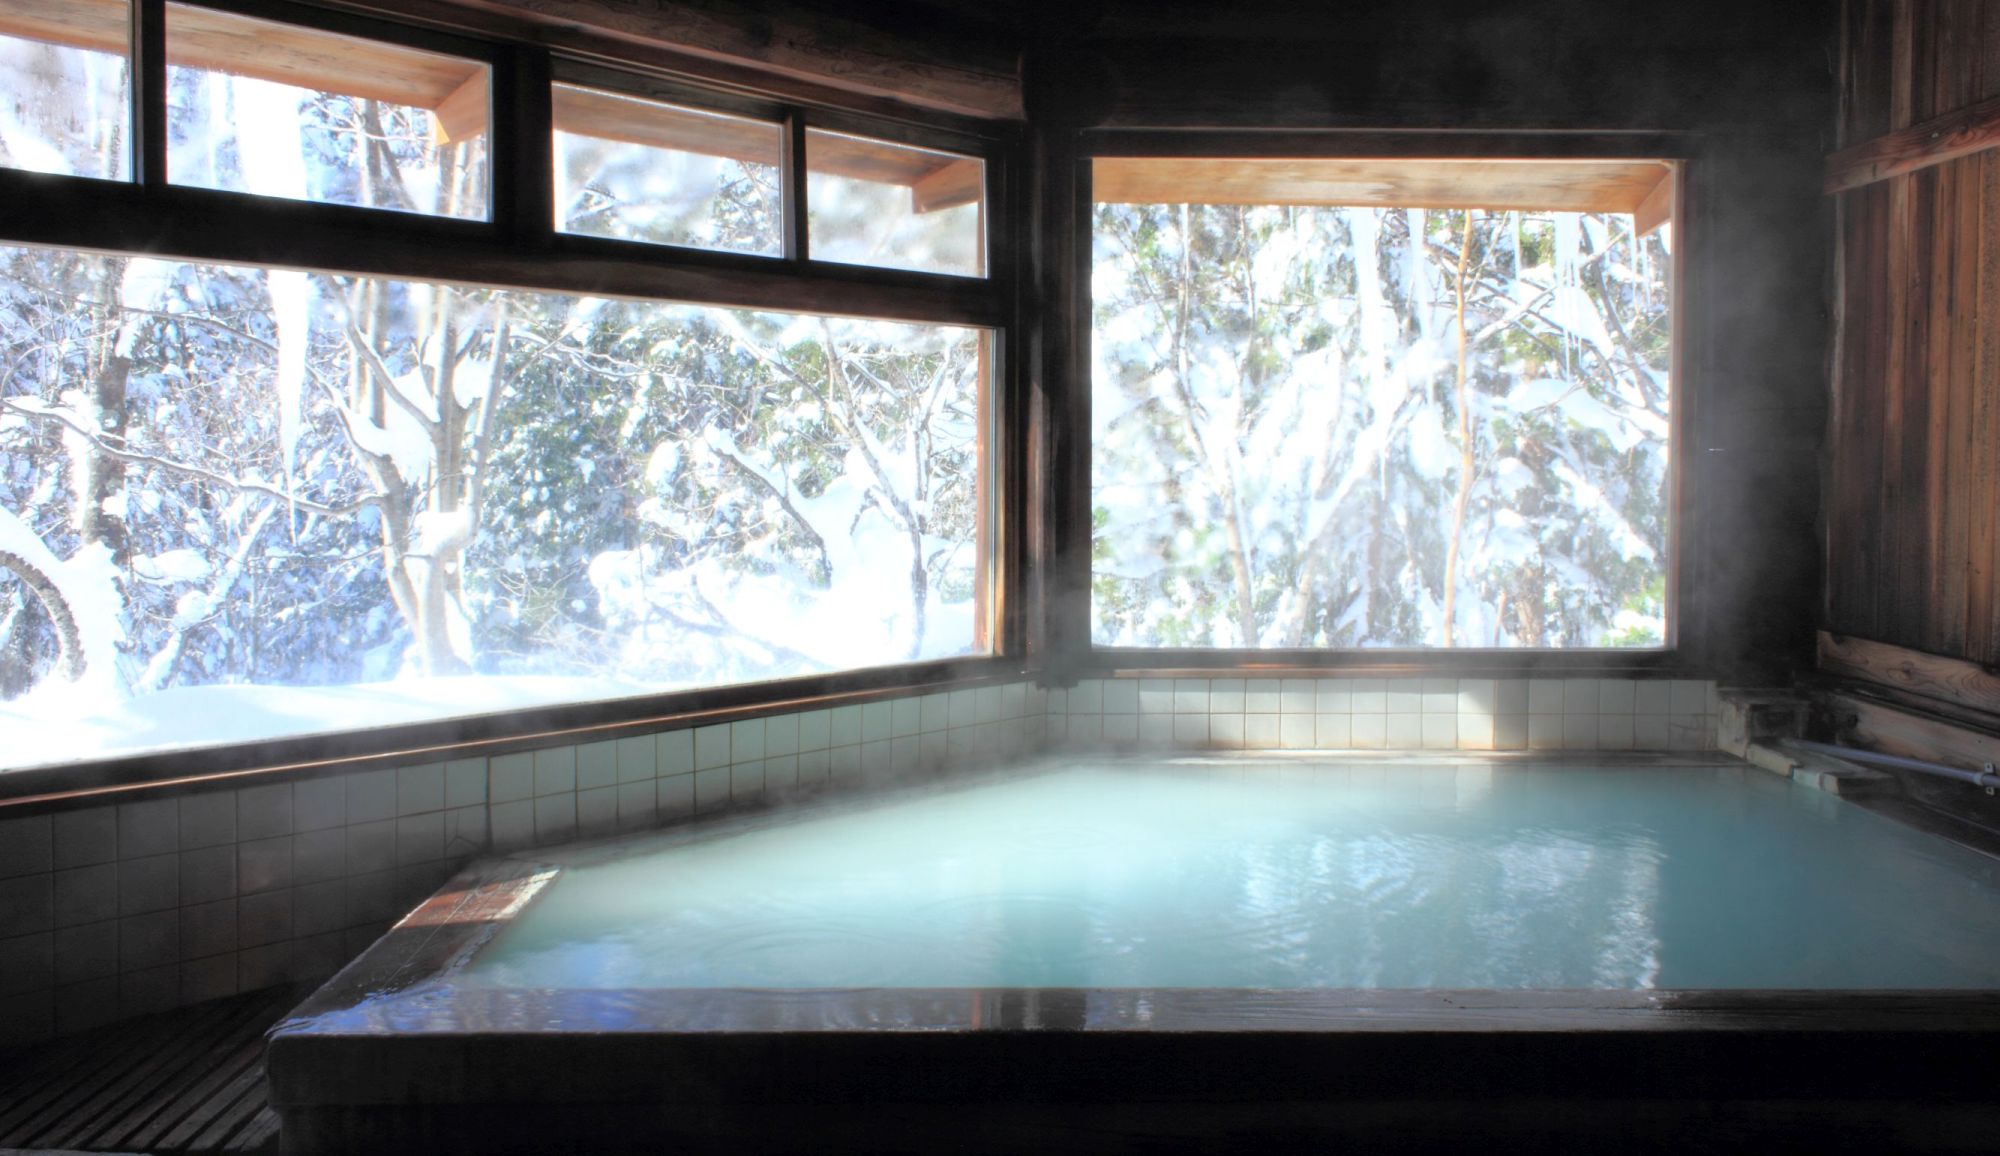 【丸太造りの天然温泉】スキーで疲れた後は雪見風呂でほっこりと。広めの窓から雪景色が眺められる